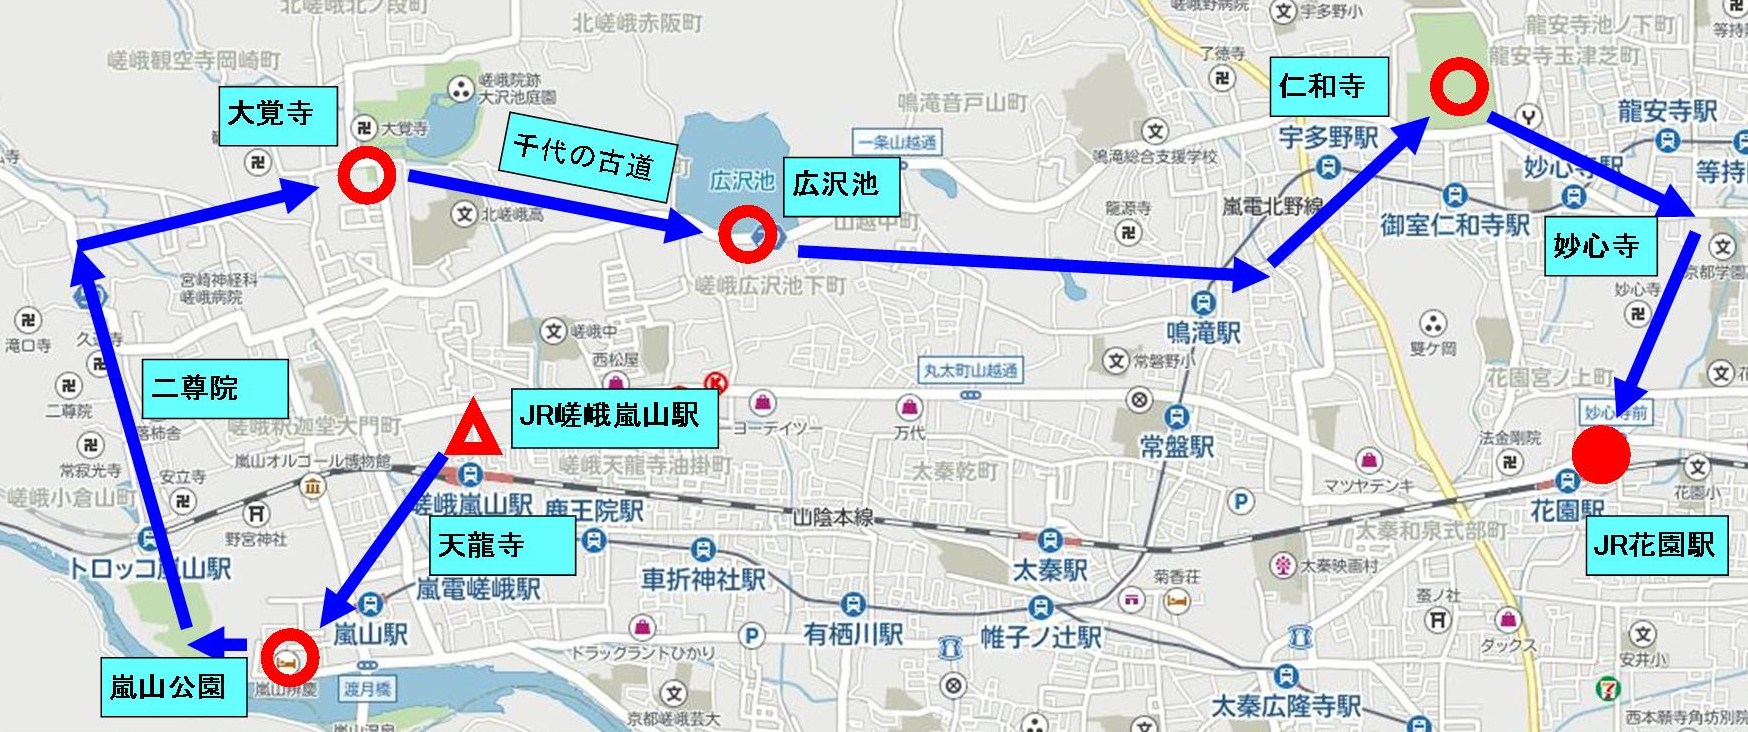 a00嵐山地図.jpg